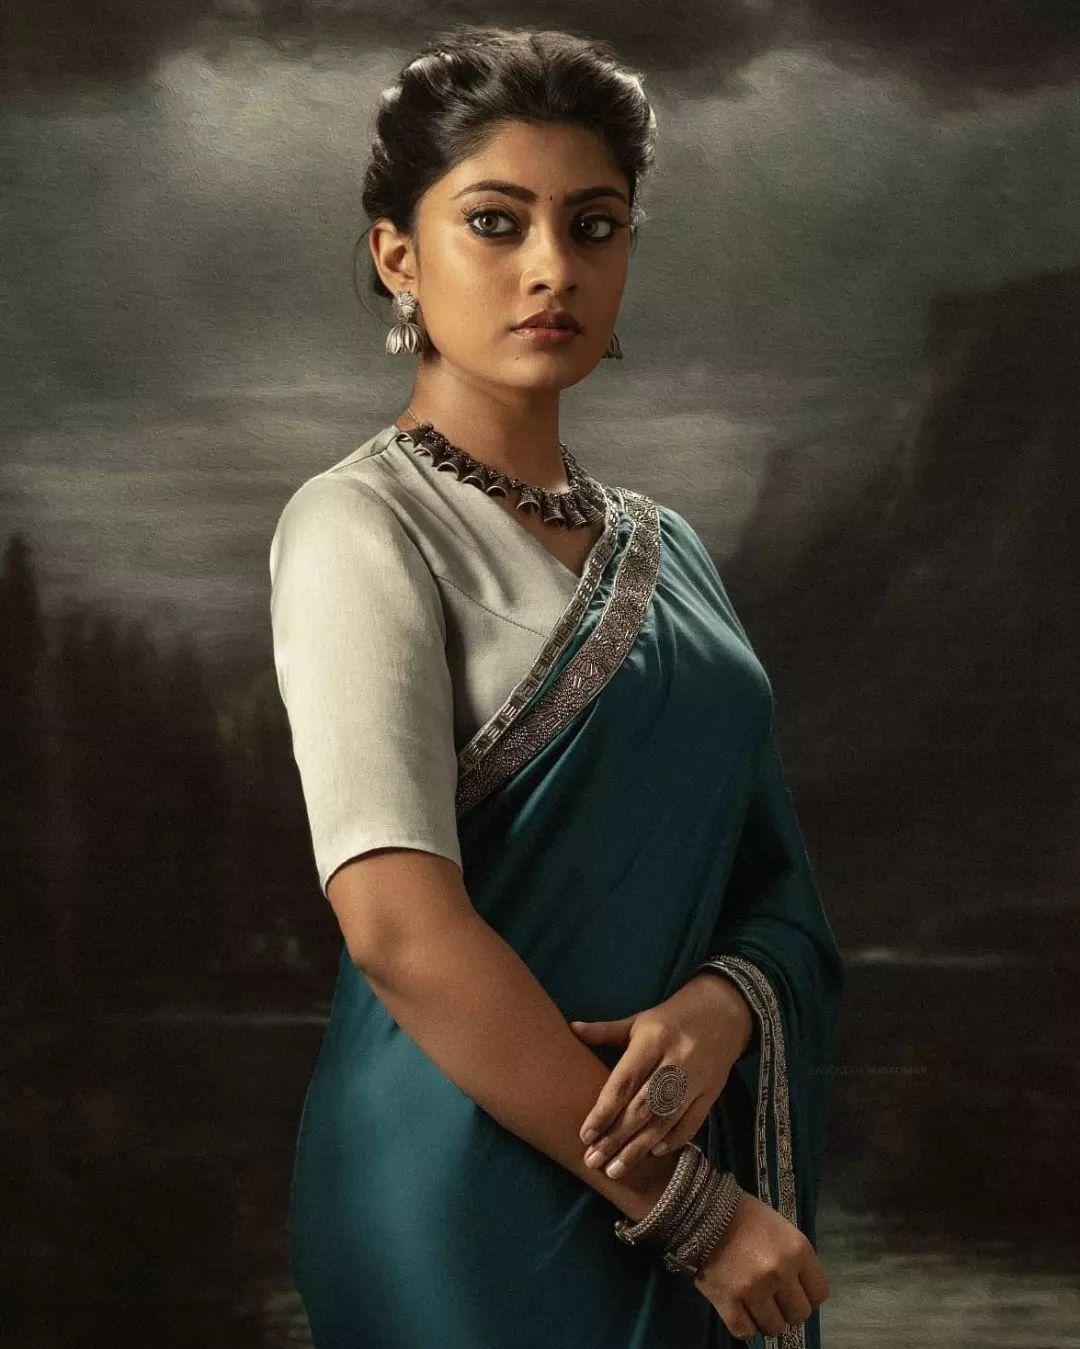 Tamil Actress Ammu Abhirami Beautiful And Glamours Photos In Saree